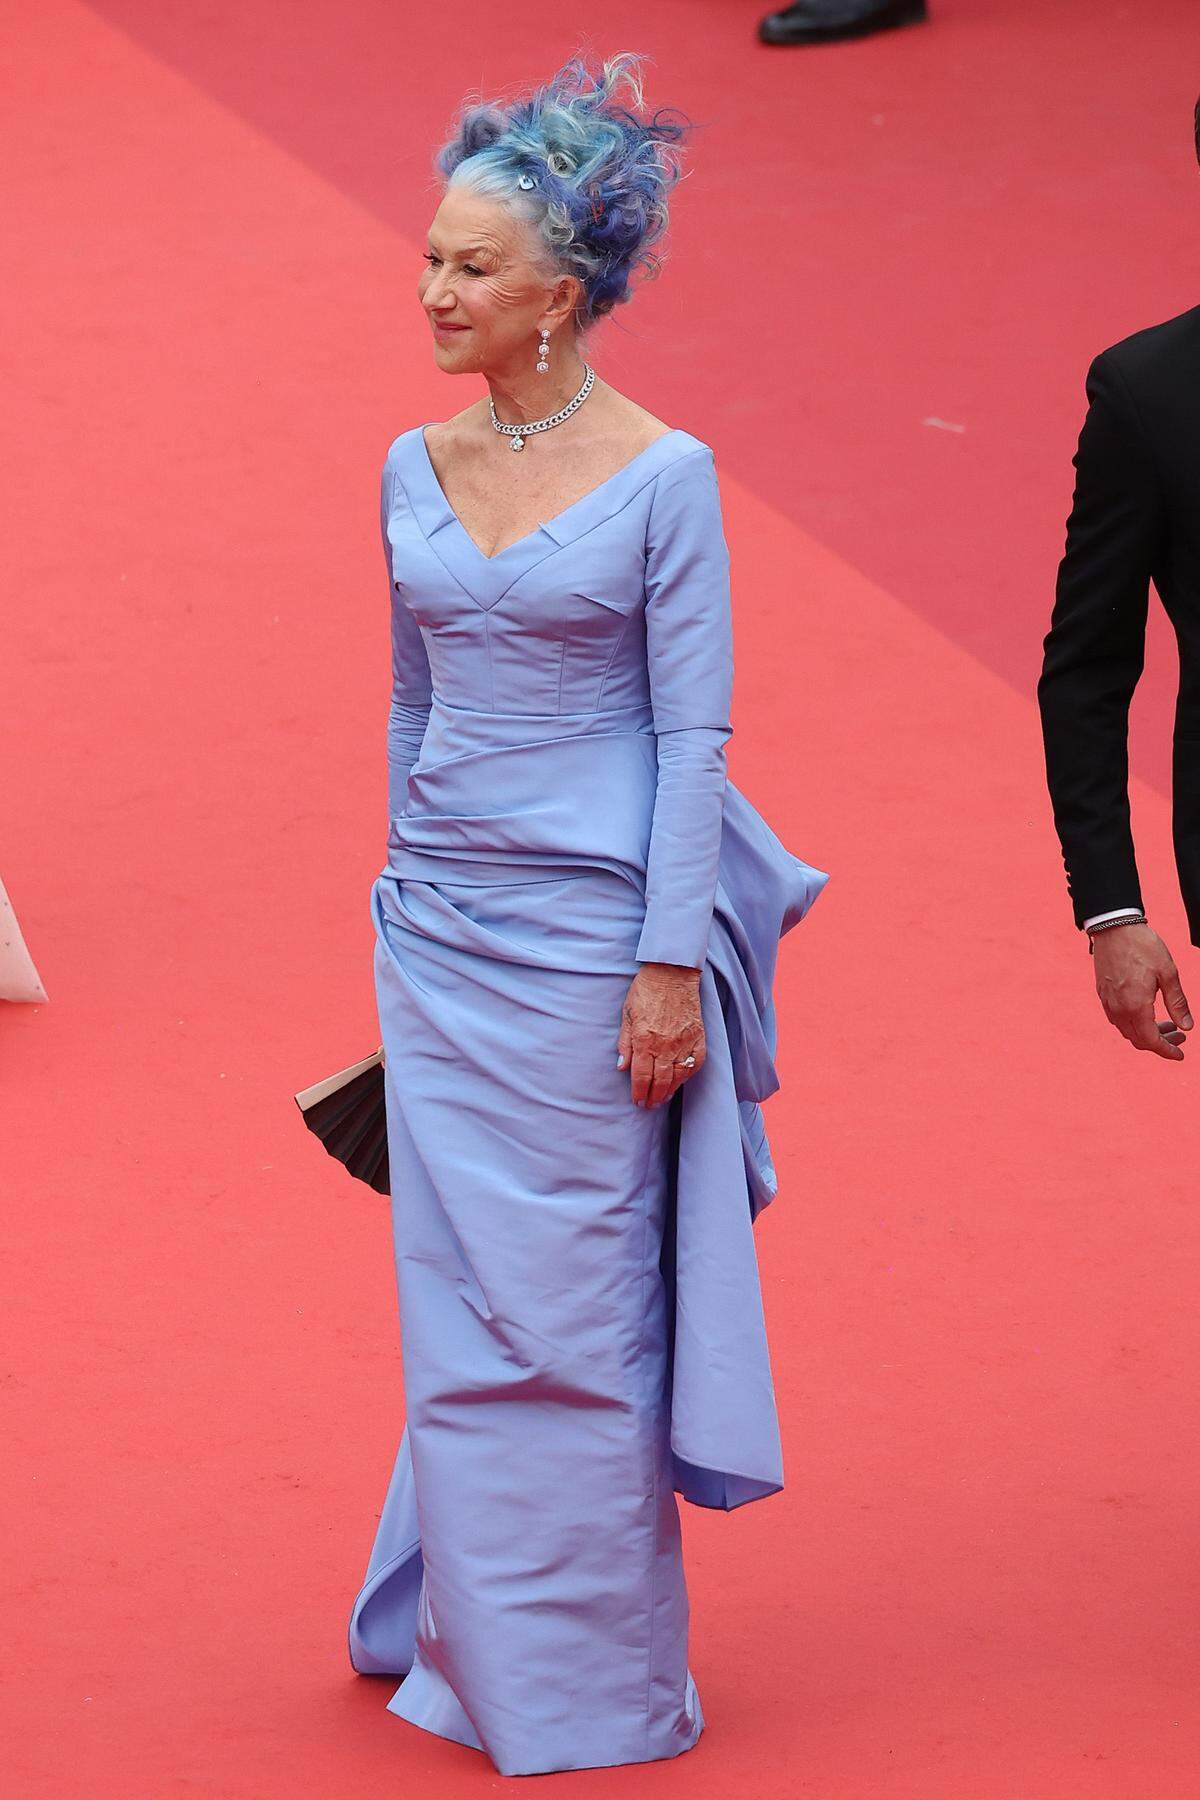 Blau in blau kam die britische Schauspielerin Helen Mirren, in einem Kleid von Del Core. Die Haarpracht ist für gewöhnlich weiß. 